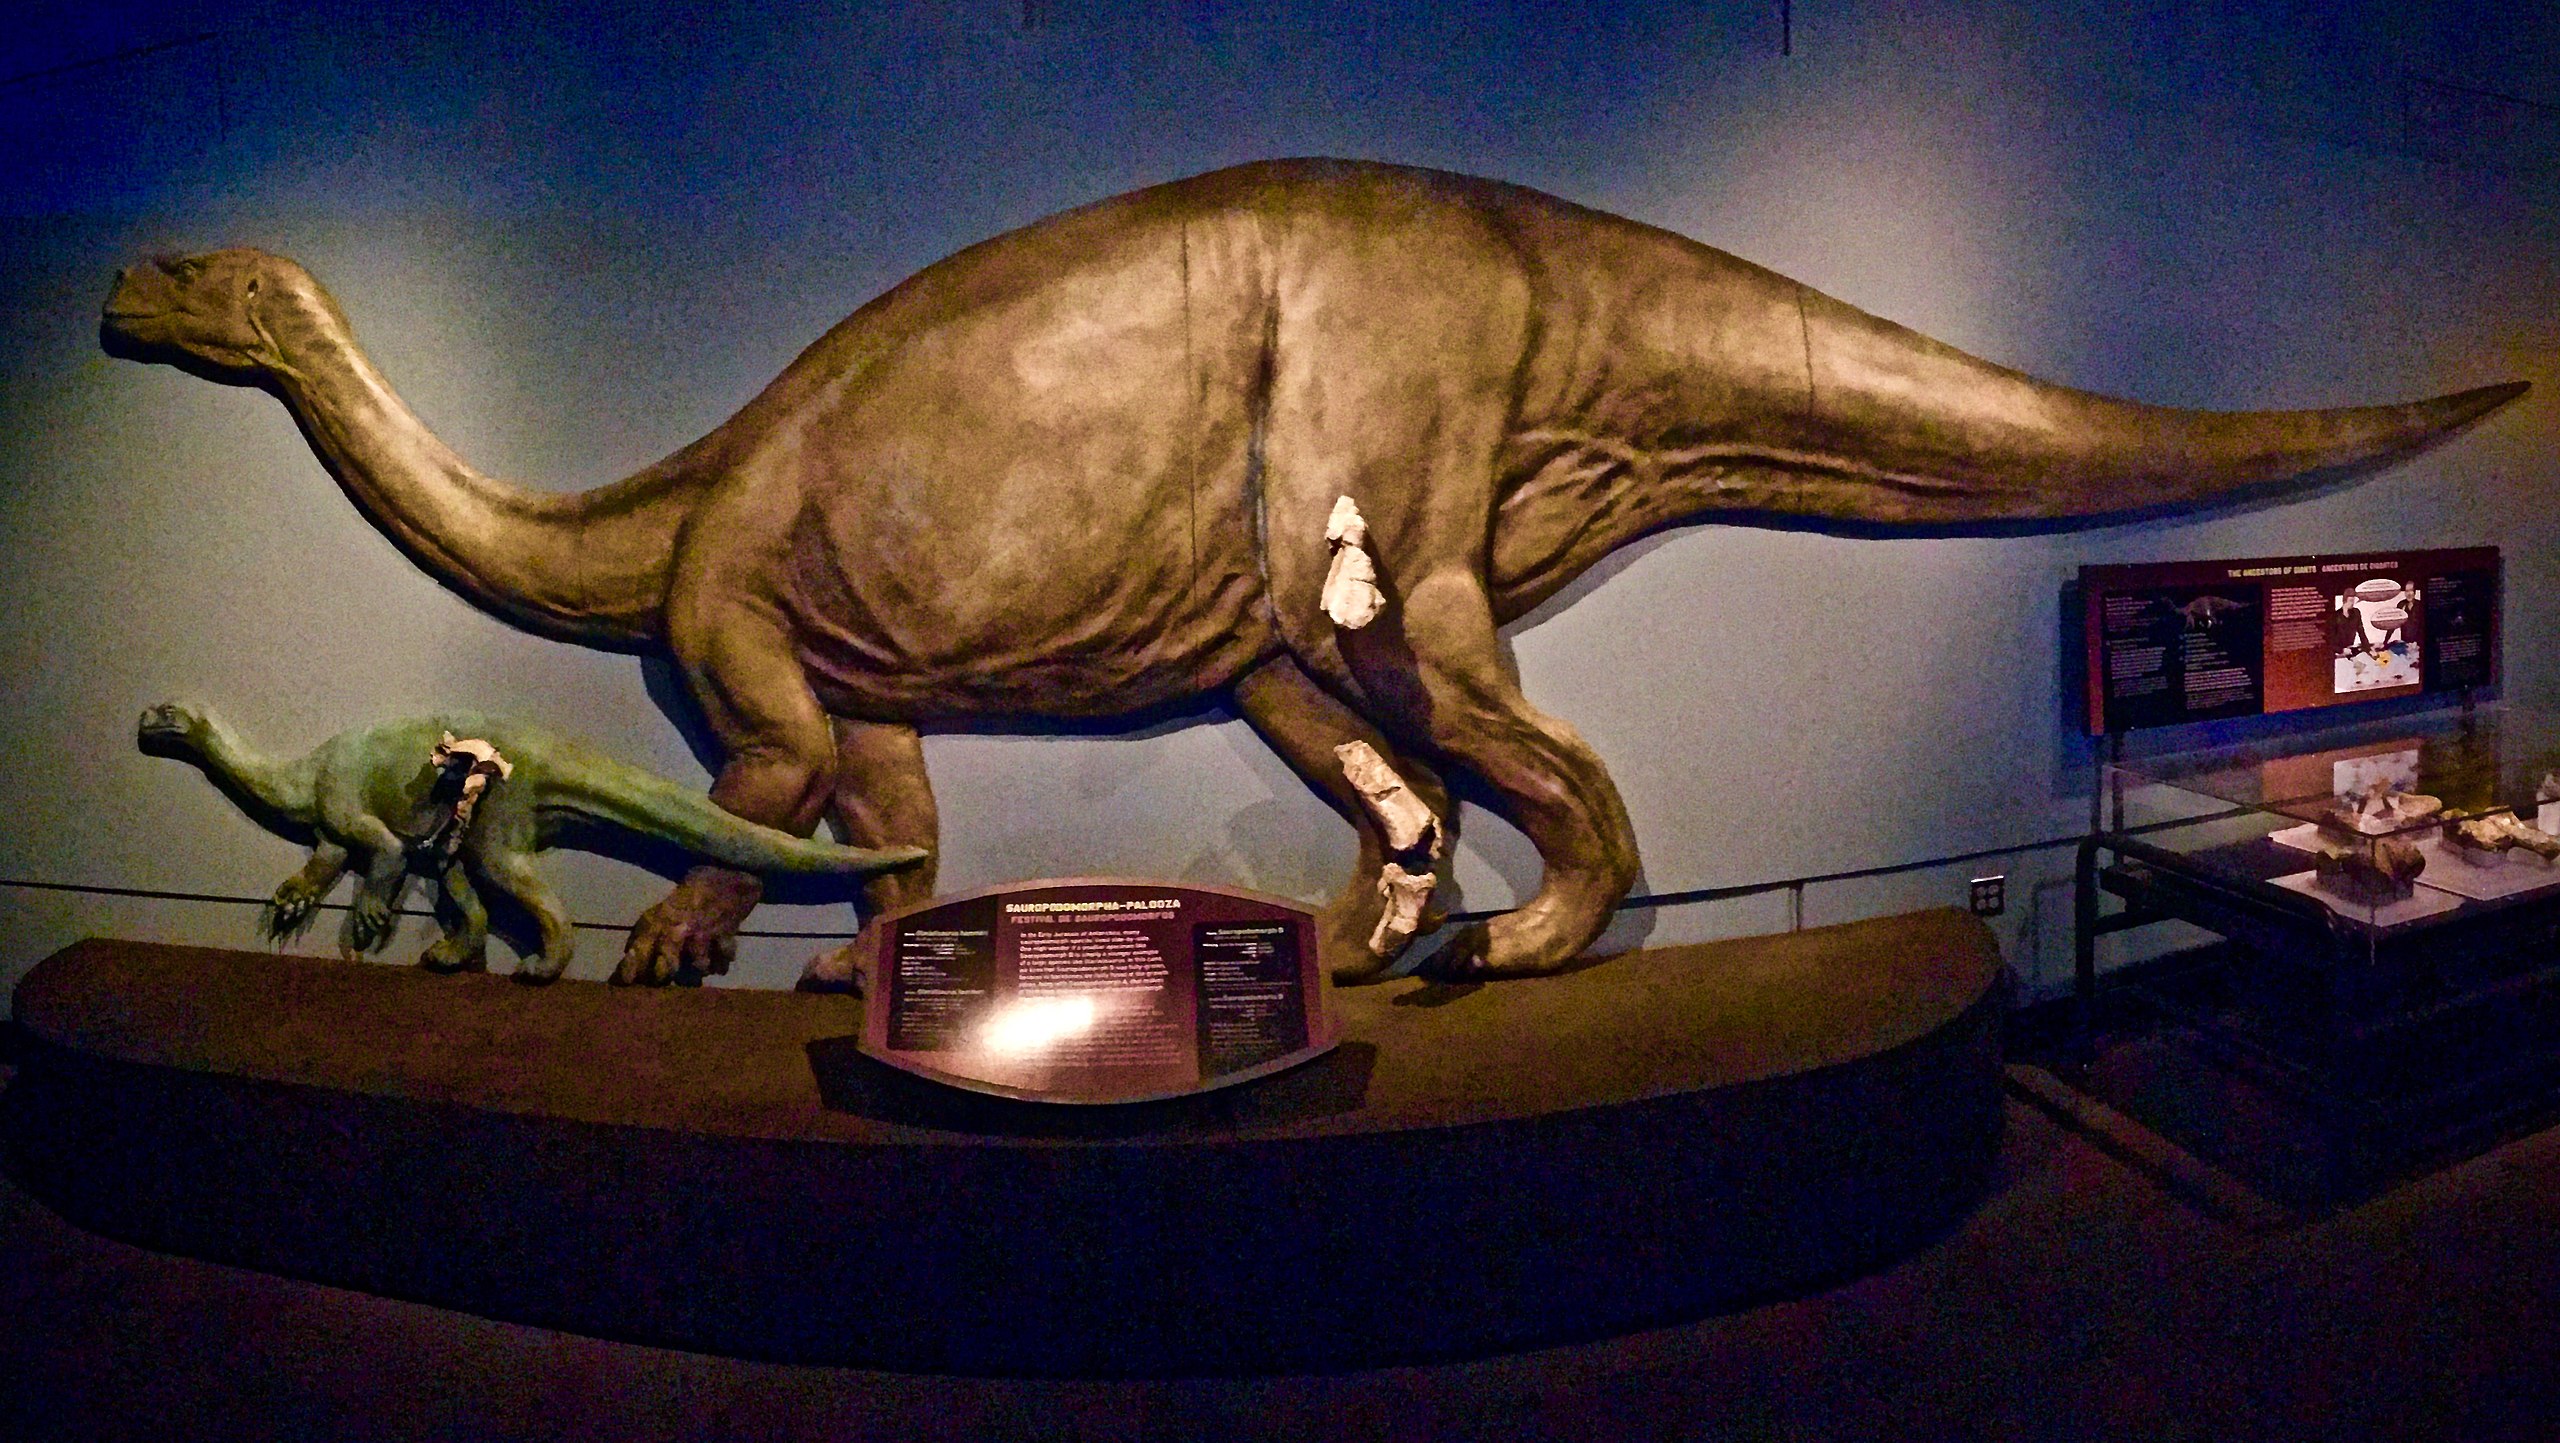 Rekonstrukce přibližného vzezření glacialisaura v expozici Field Museum of Natural History v Chicagu. Menší zelený model ukazuje dochované fosilní fragmenty dalšího, dosud nepopsaného druhu malého sauropodomorfa, objeveného ve stejném souvrství. Kred